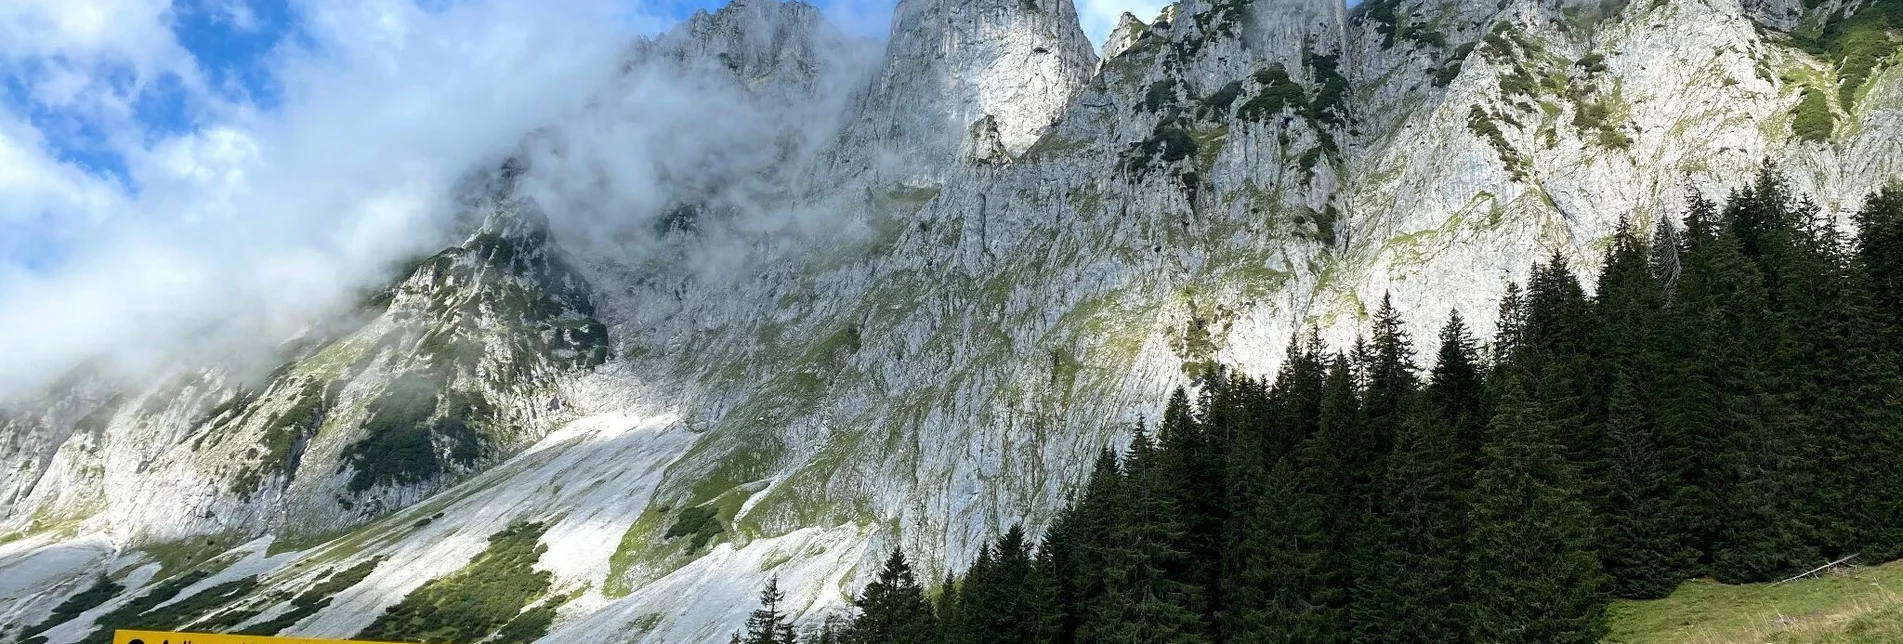 Via Ferrata Wildfrauensteig - Bosruck Nordostgrad - Touren-Impression #1 | © TV Gesäuse